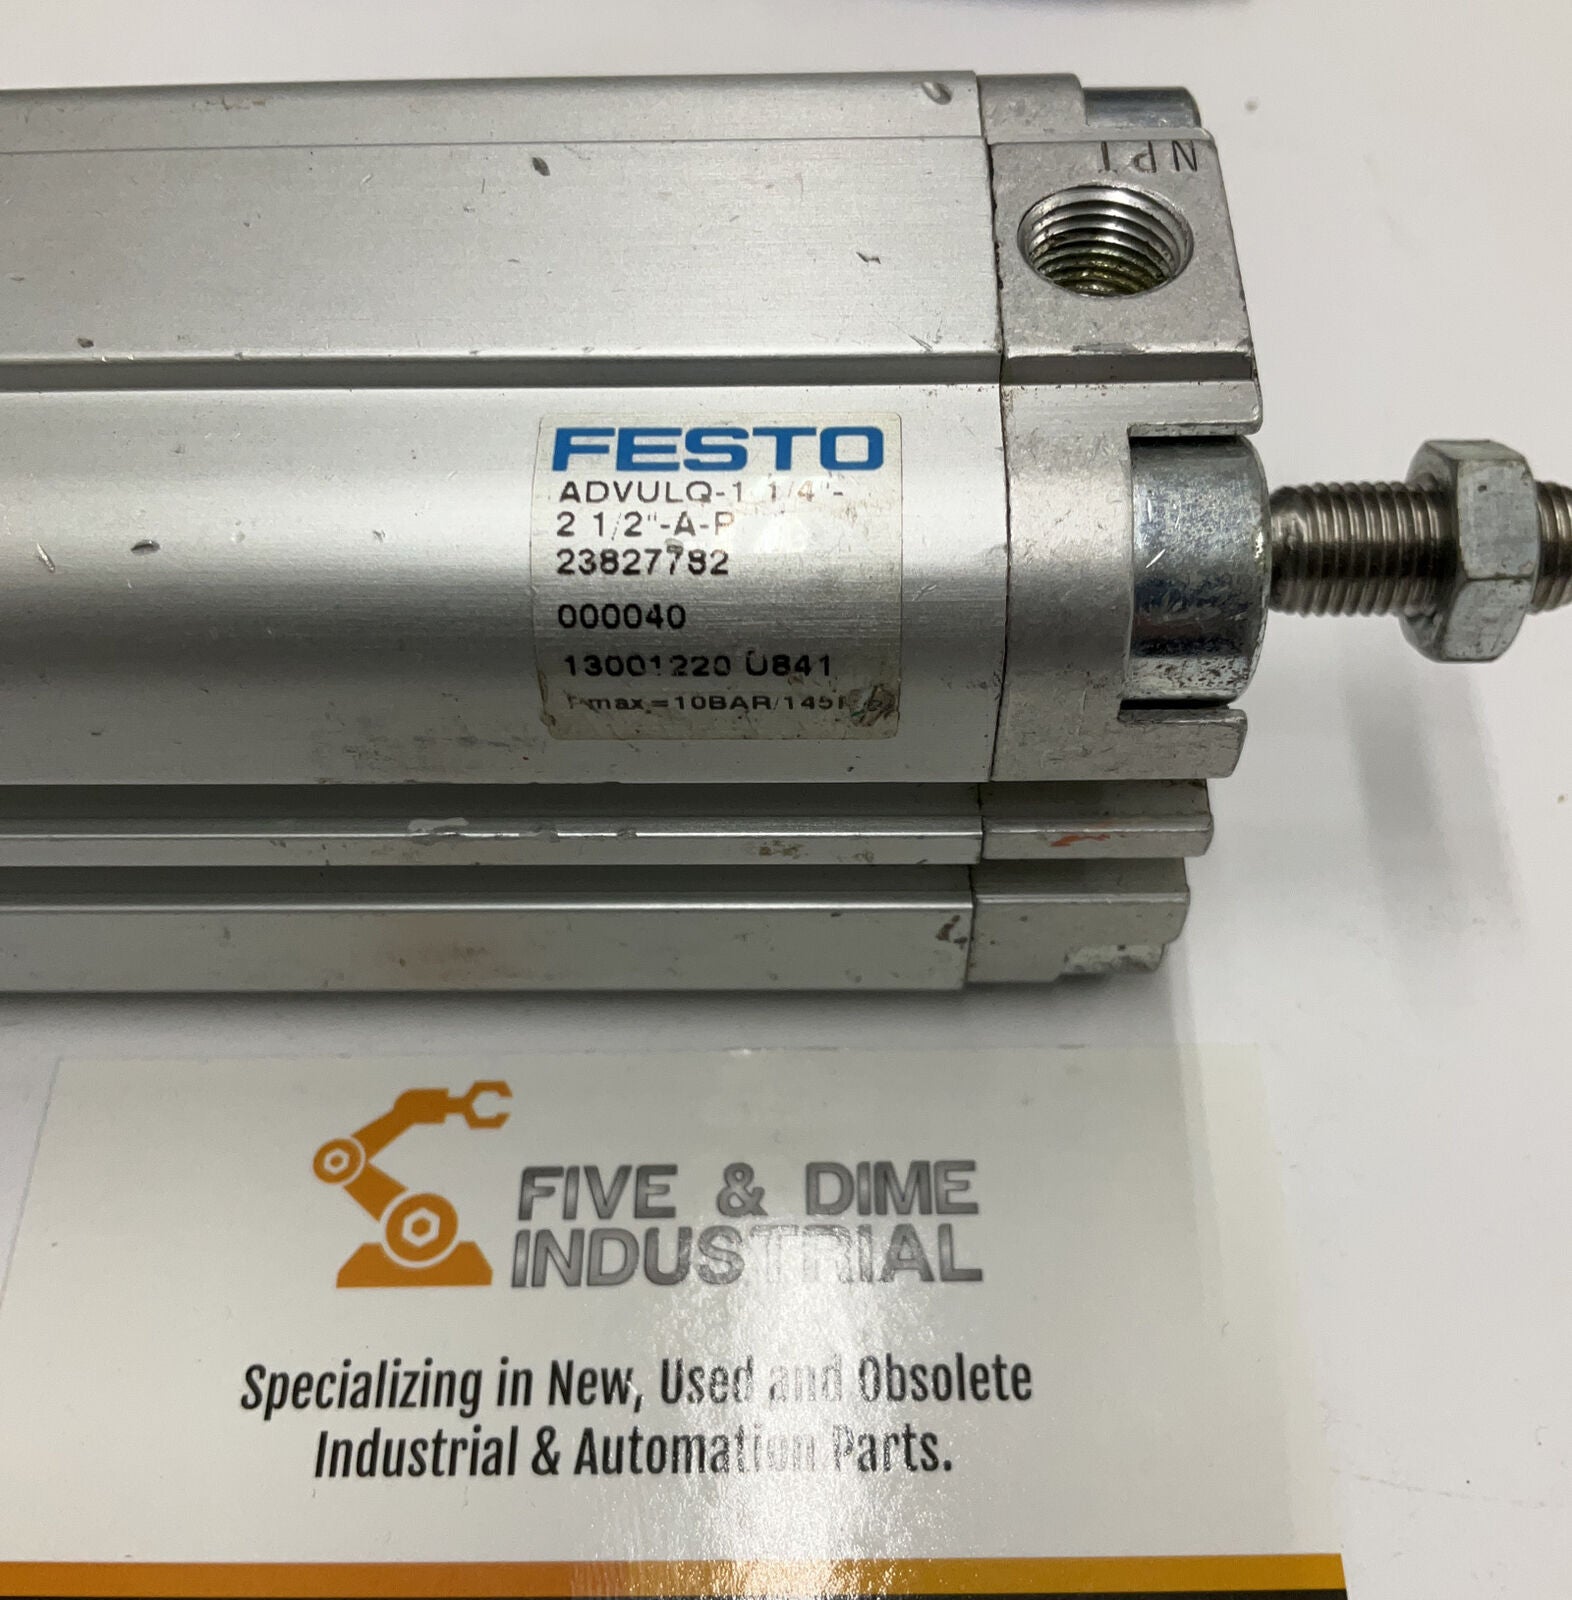 Festo ADVULQ-1 1/4" 2 1/2"-A-P 23827782 Air Cylinder (CL300) - 0